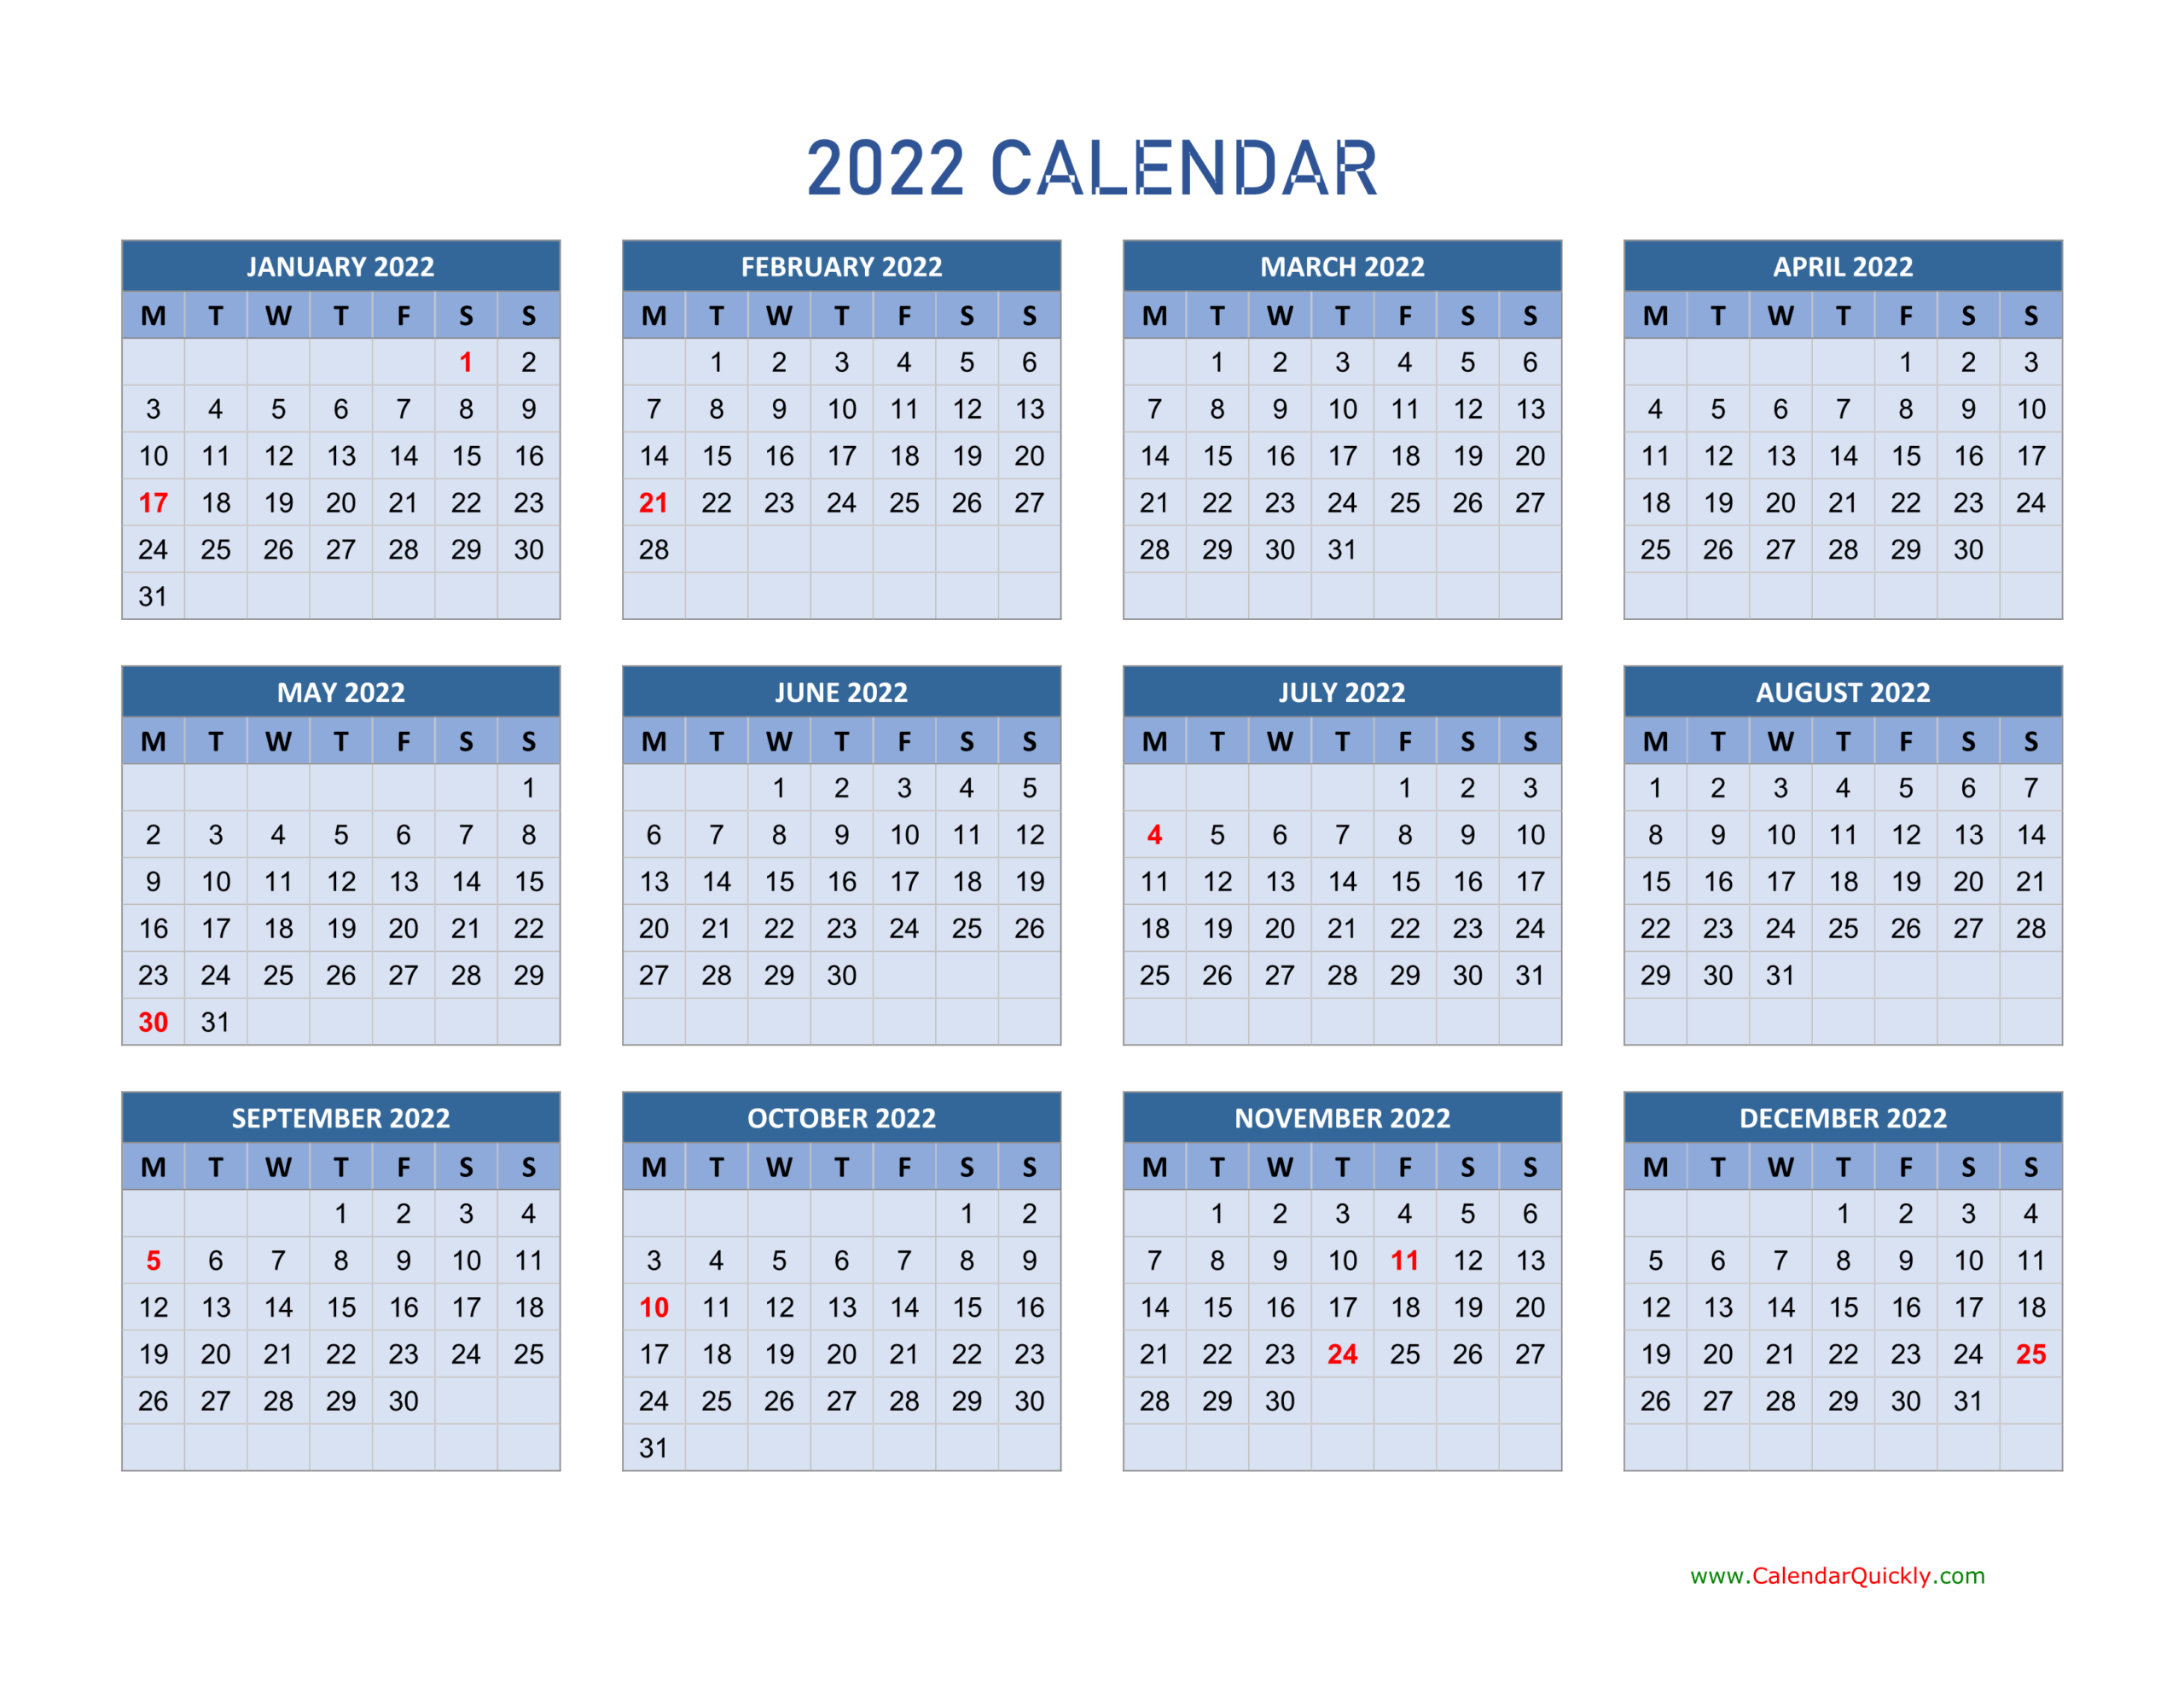 Monday 2022 Calendar Horizontal | Calendar Quickly  Printable Calendar 2022 Single Page